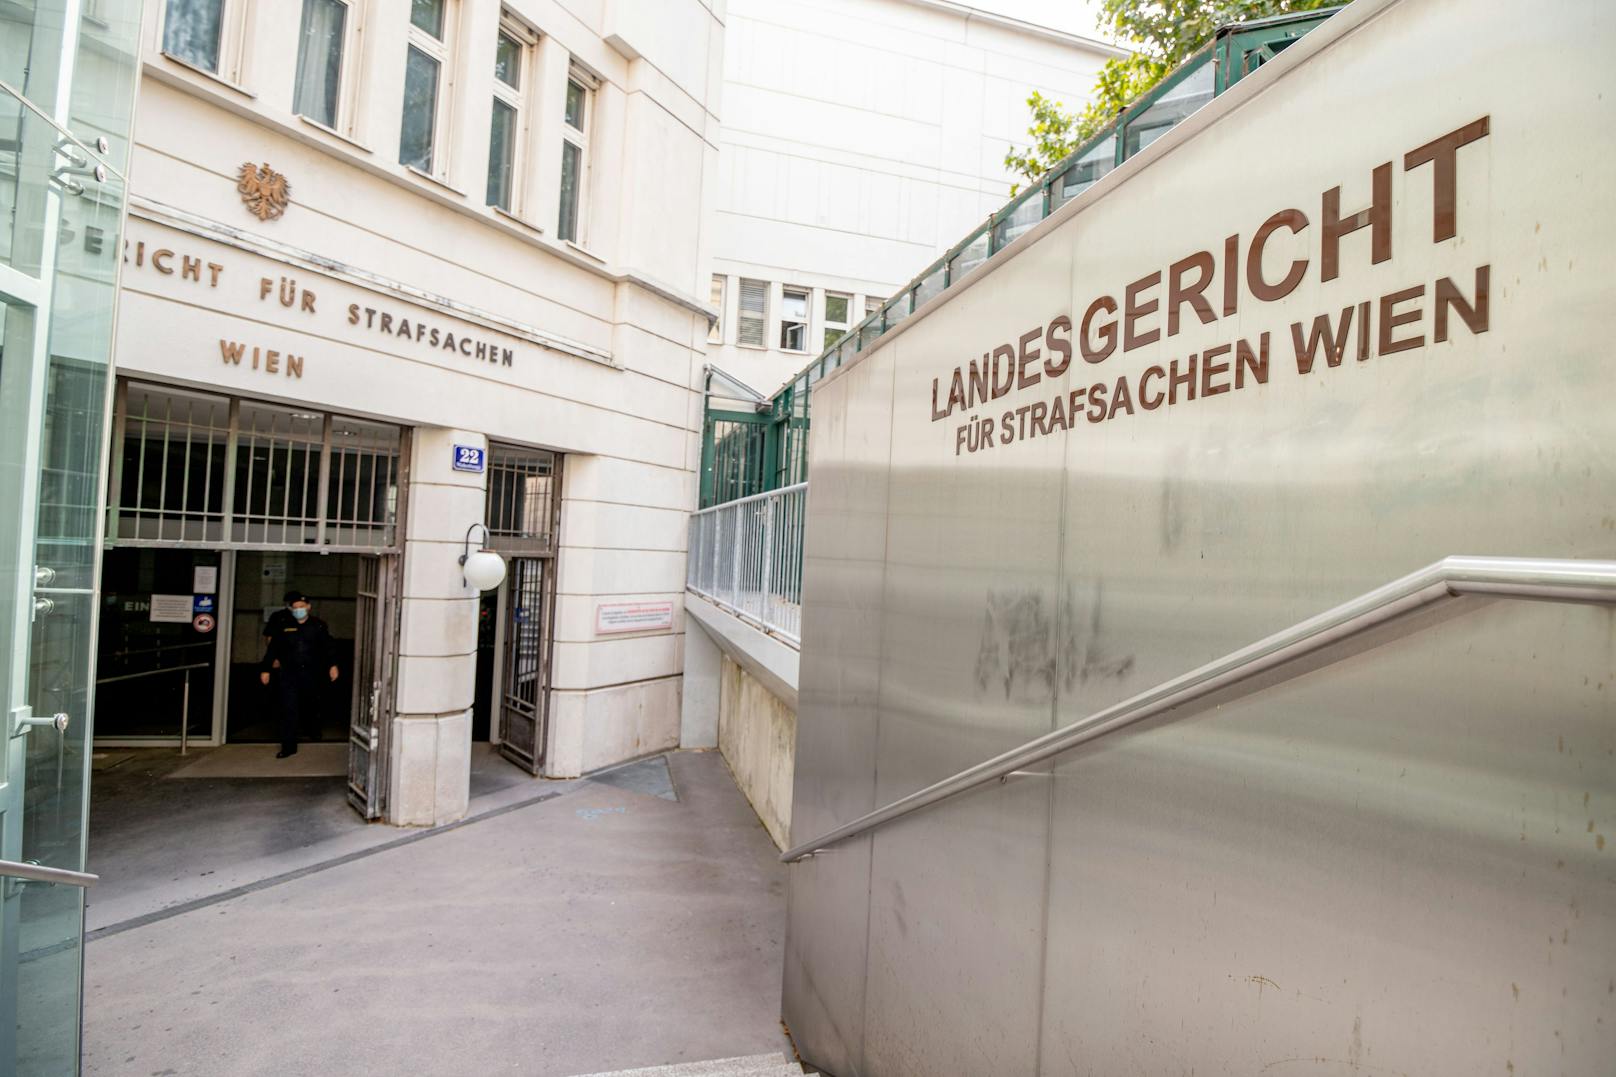 Die Staatsanwaltschaft Wien ermittelt wegen Missbrauchsverdachts – in der Einrichtung bezweifelt man die Richtigkeit der Vorwürfe.